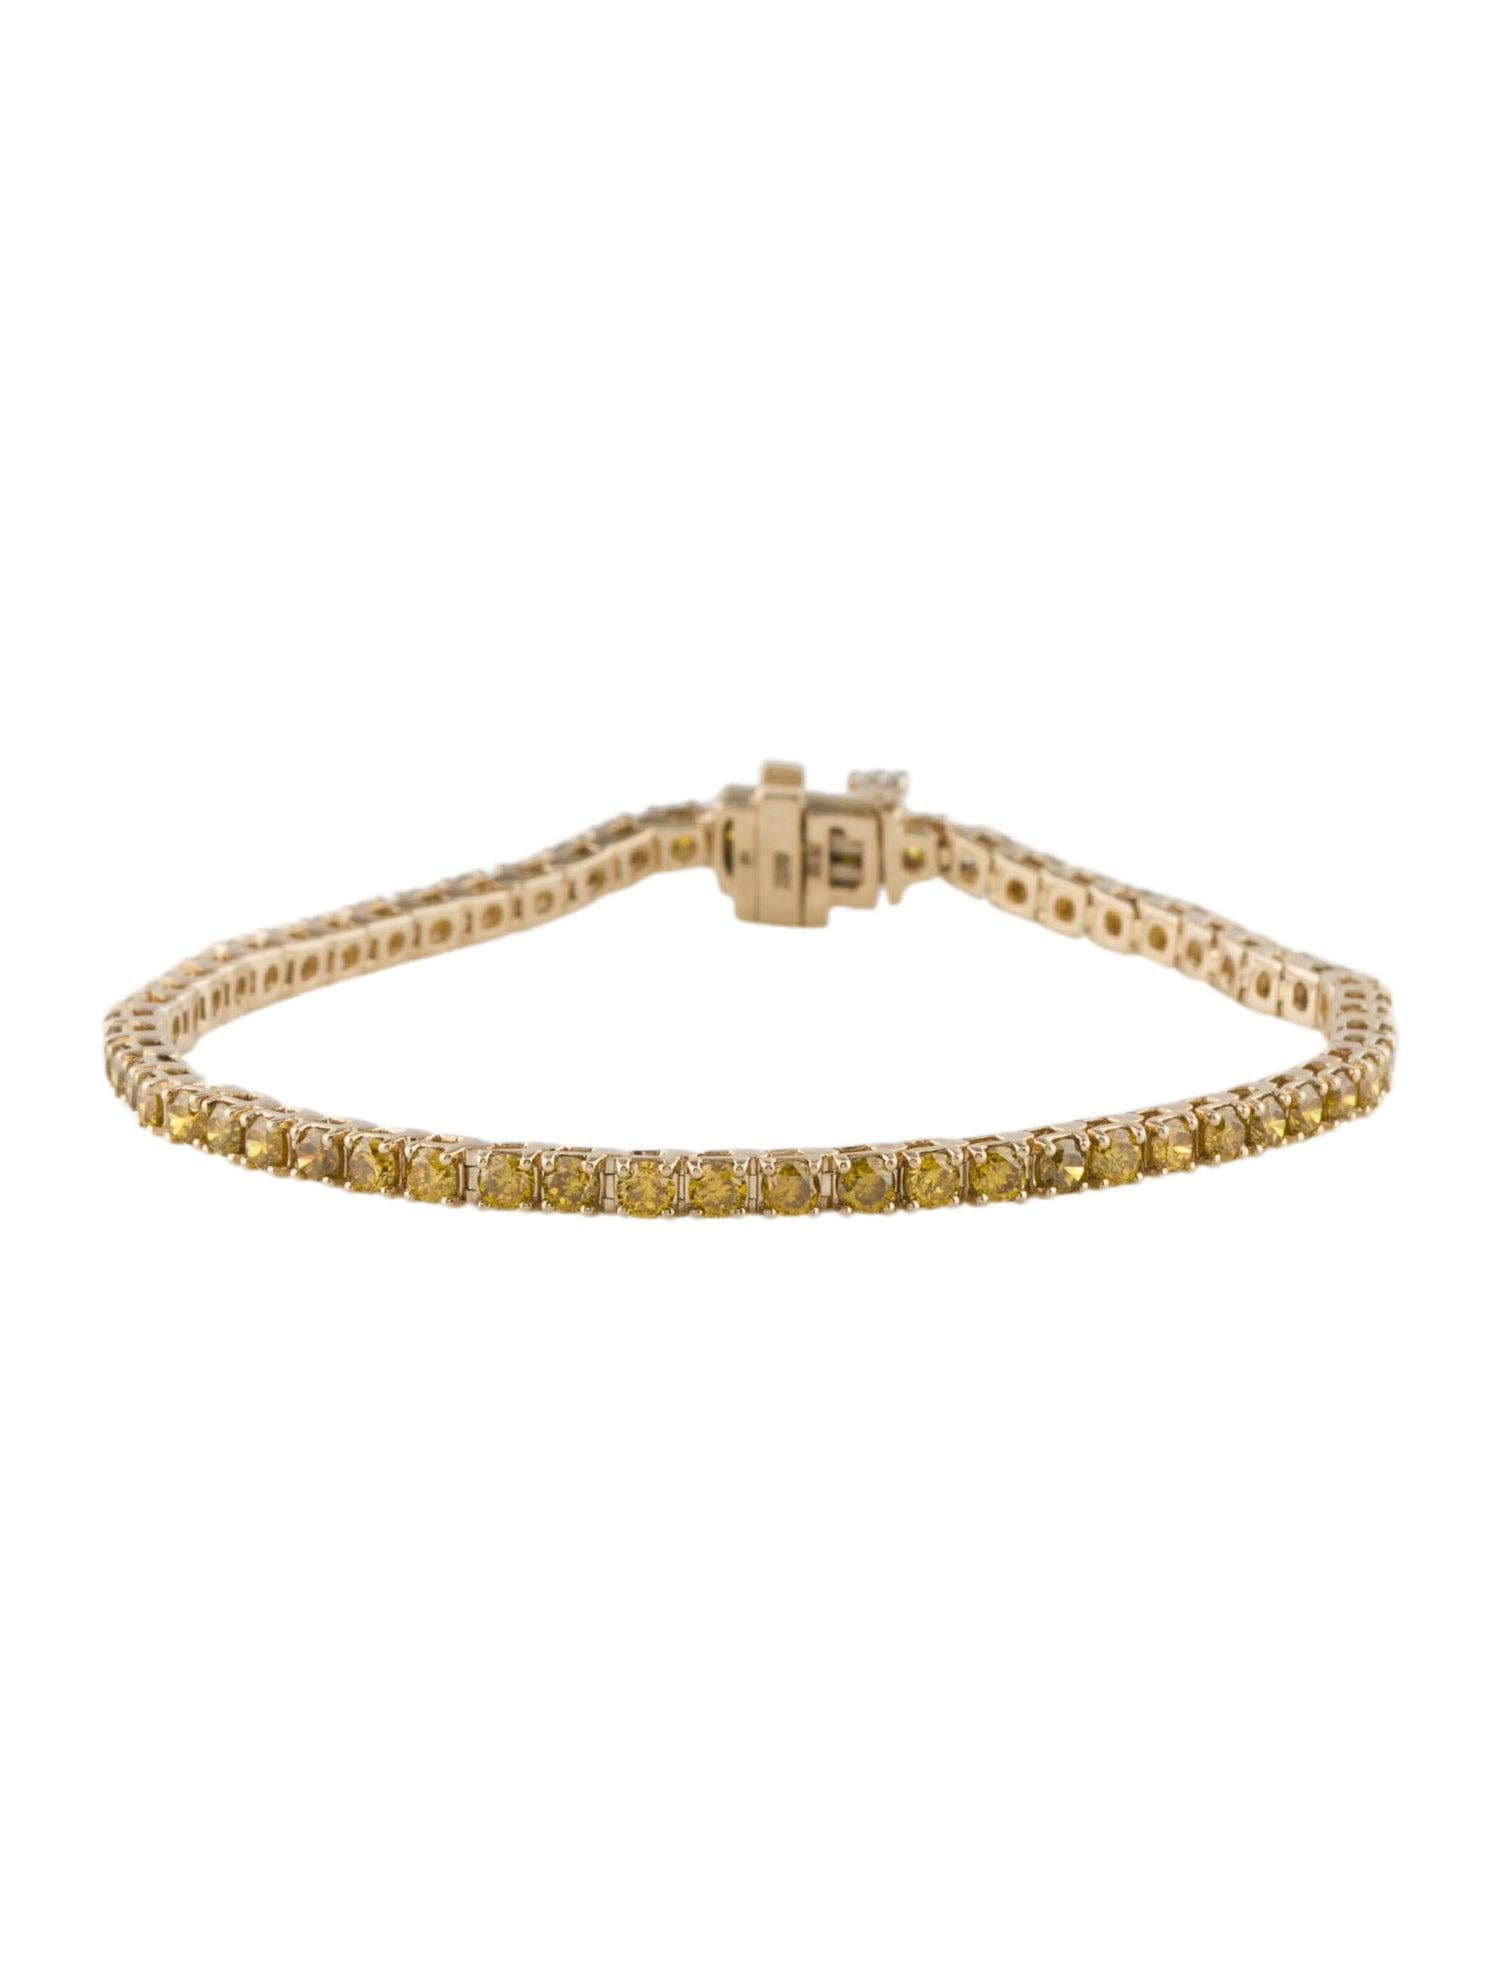 Mit dem Radiant Sunshine Yellow Diamond Bracelet aus der exquisiten Collection'S von Jeweltique wird Ihr Handgelenk zum Blickfang. Dieses in Indien in sorgfältiger Handarbeit gefertigte Armband ist ein Beweis für unser Engagement für